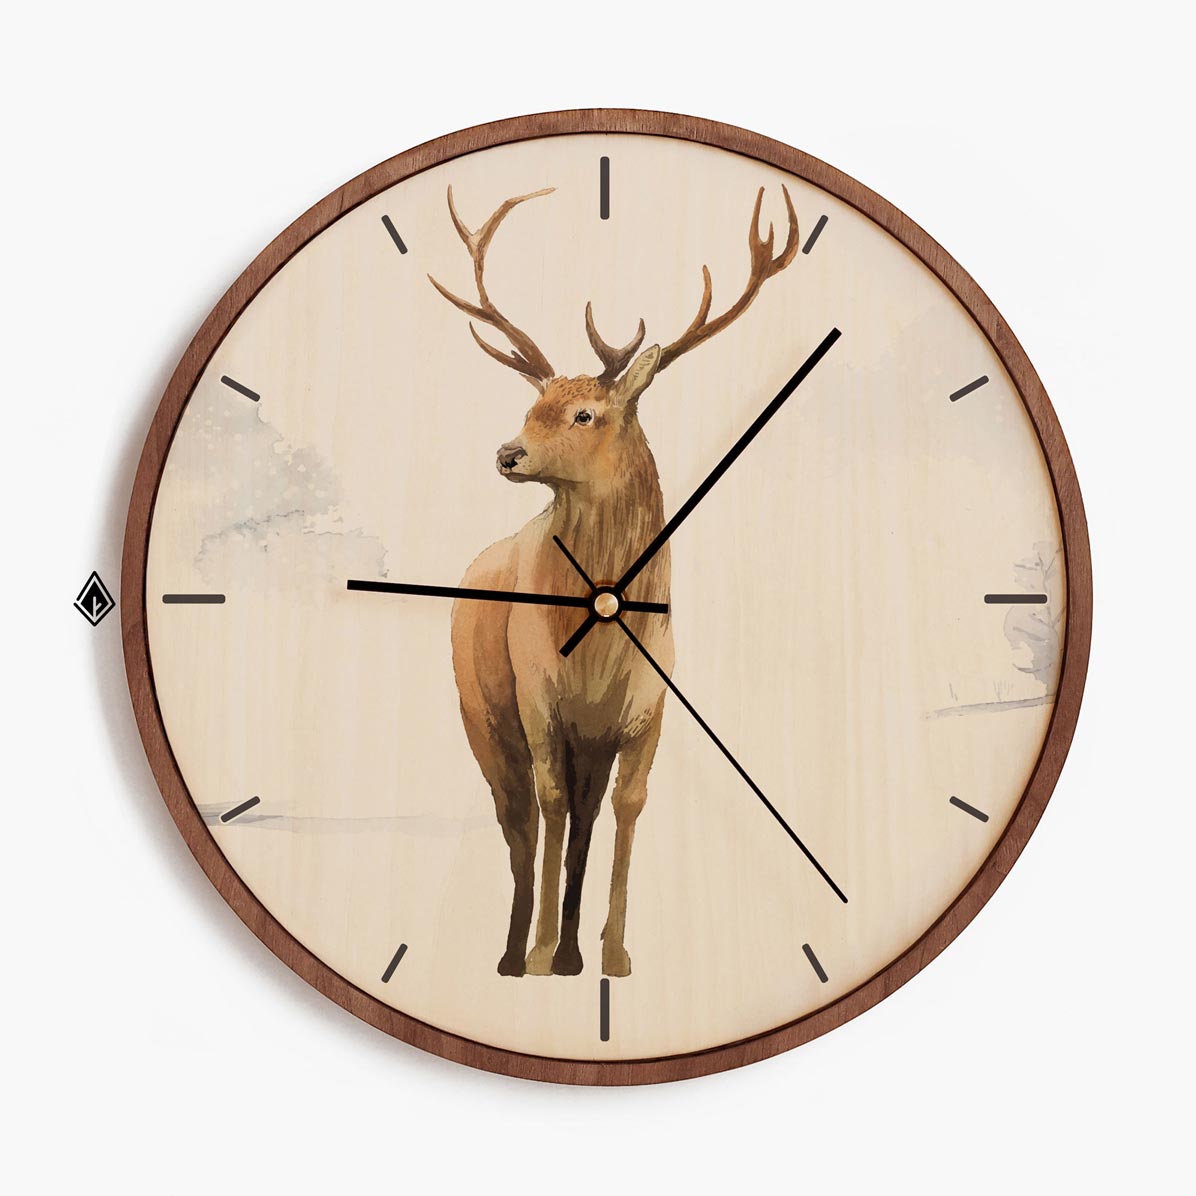 Wooden Wall Clocks Deer in Snow